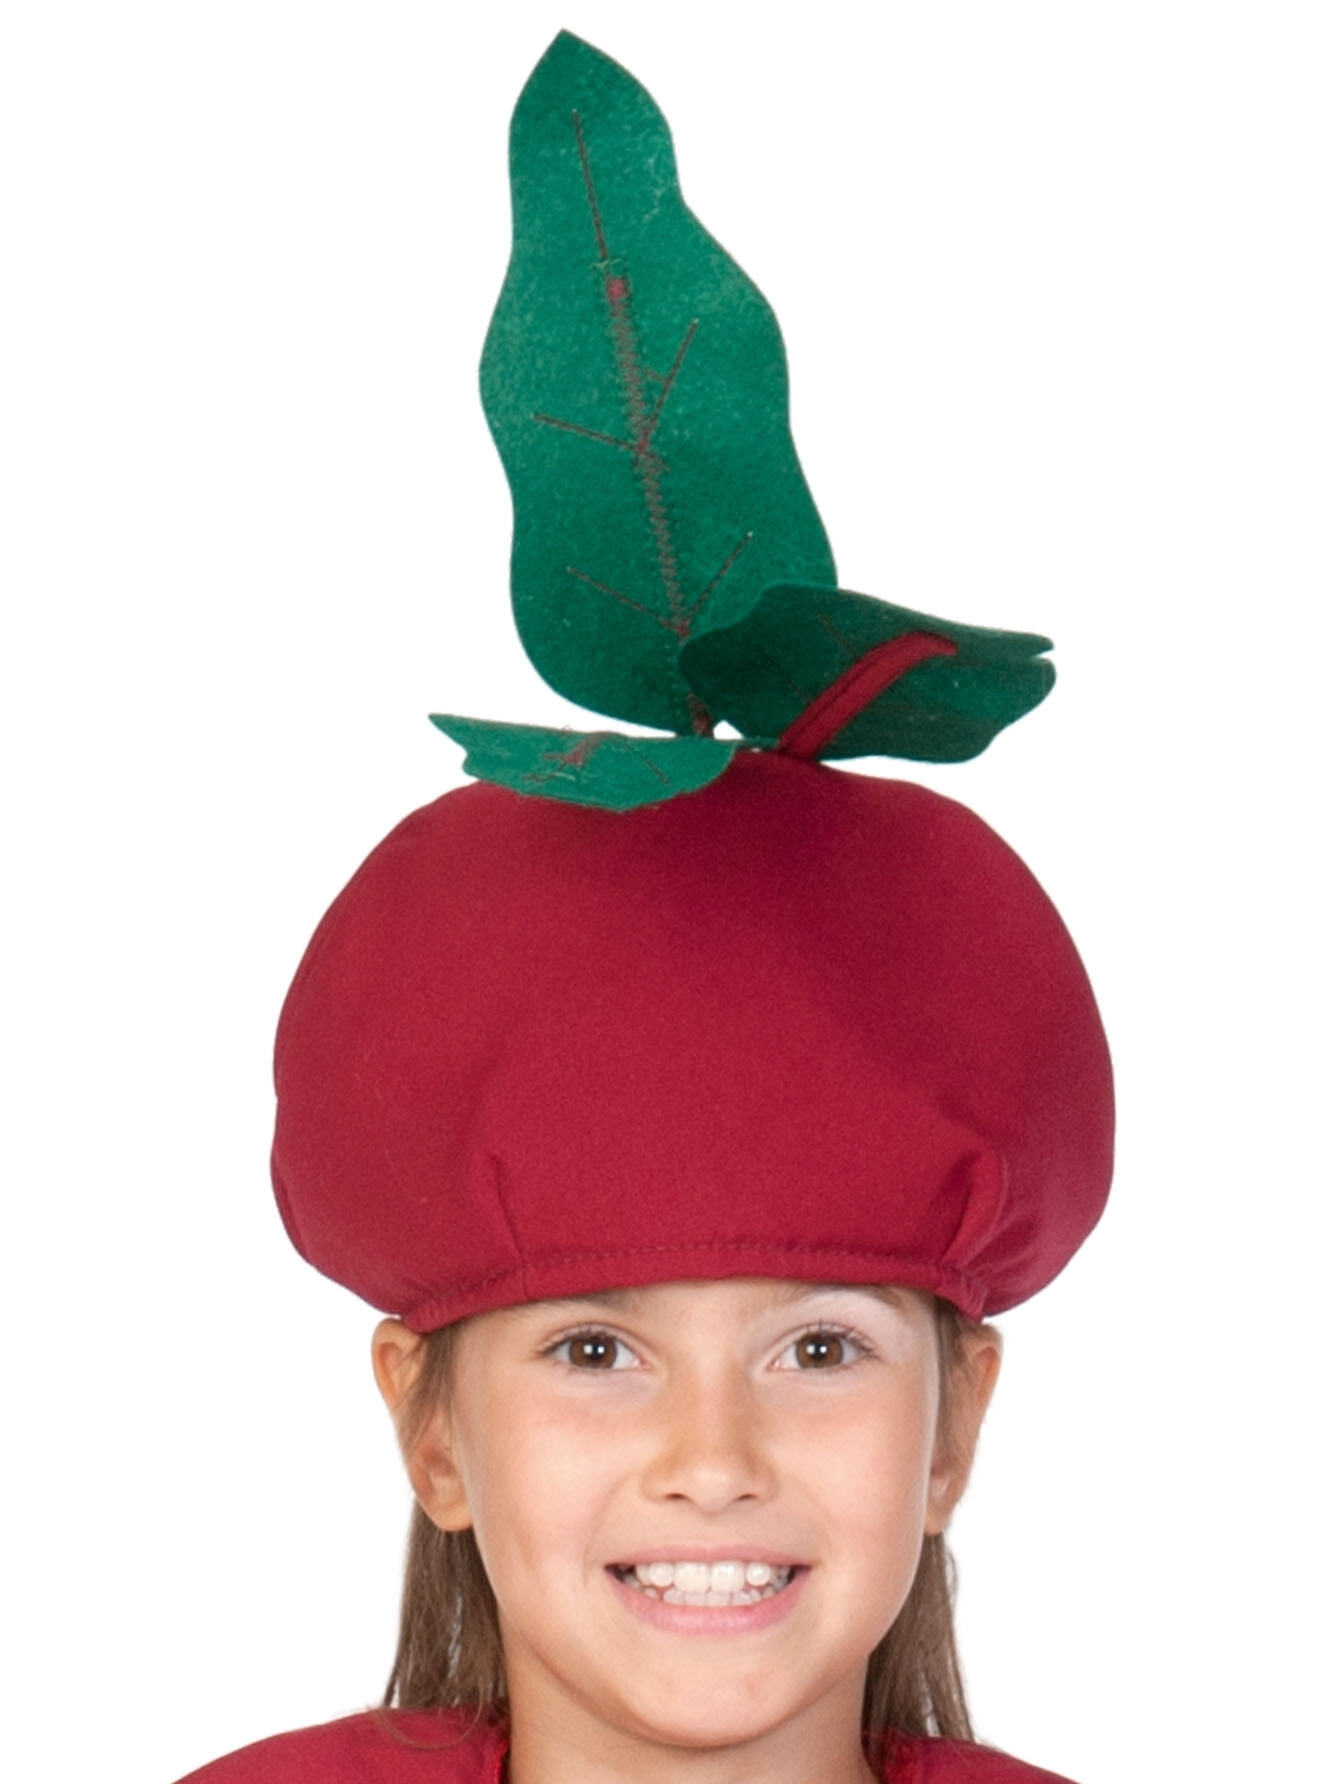 Детская карнавальная шапочка свекла купить в интернет-магазине горыныч45.рф